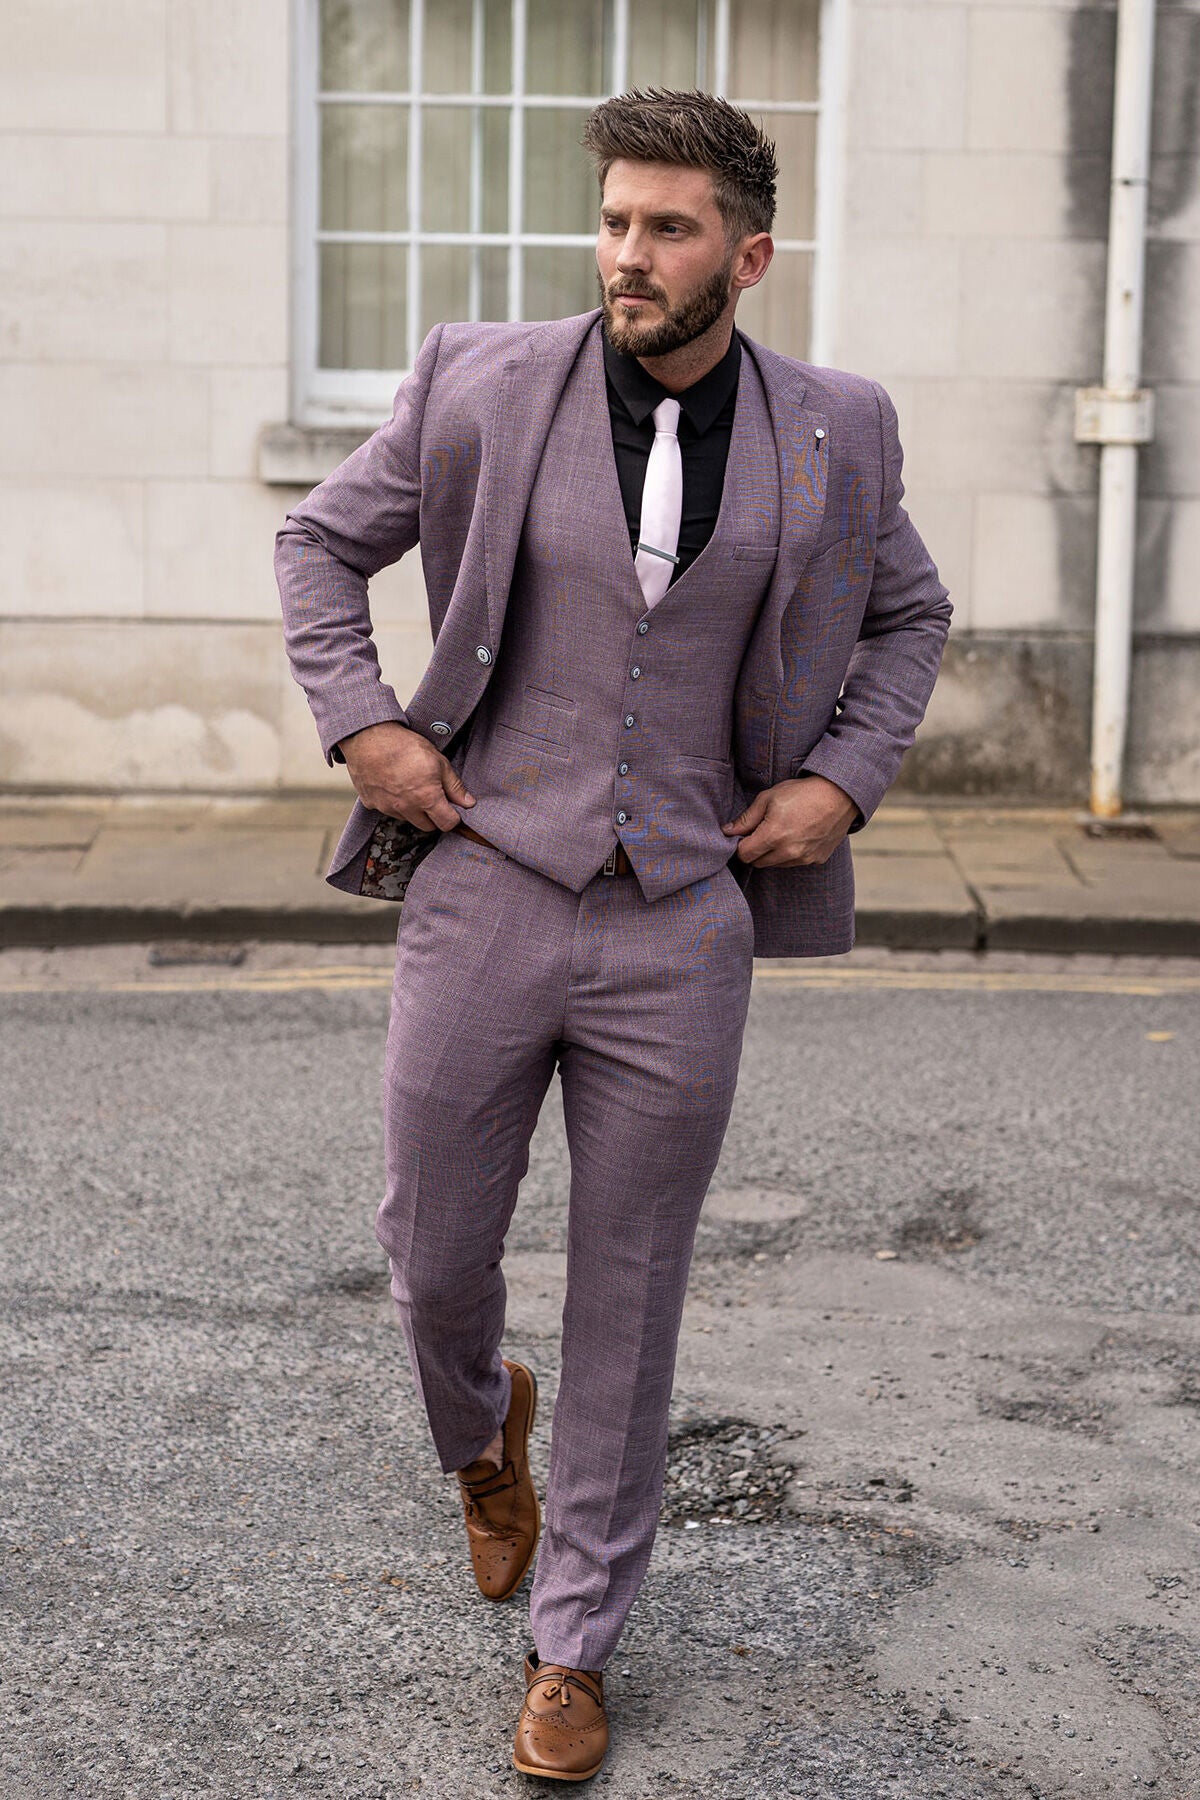 Formal Women's Pant Suit 2 Piece Slim Purple Blazer + Trousers Party Dress  Ouifit Suit for Lady - AliExpress